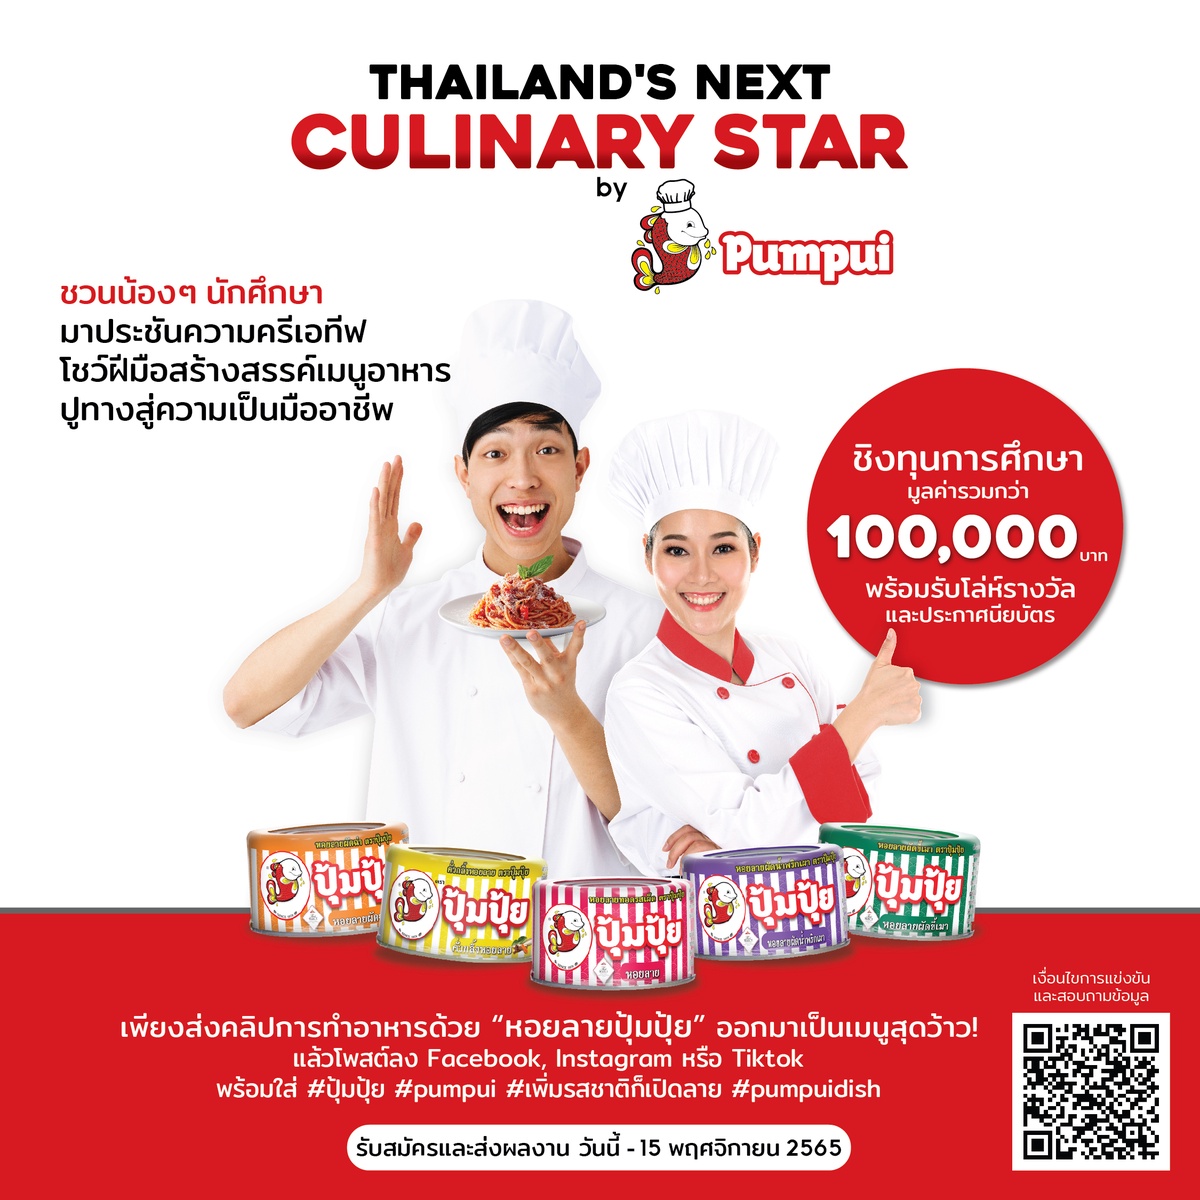 ปุ้มปุ้ย ชวน Gen Z ประชันความครีเอทีฟ โชว์ฝีมือผ่านการสร้างสรรเมนูอาหาร ผลักดันสู่เวทีครัวระดับชาติ ในโครงการ Thailand's Next Culinary Star by Pumpui